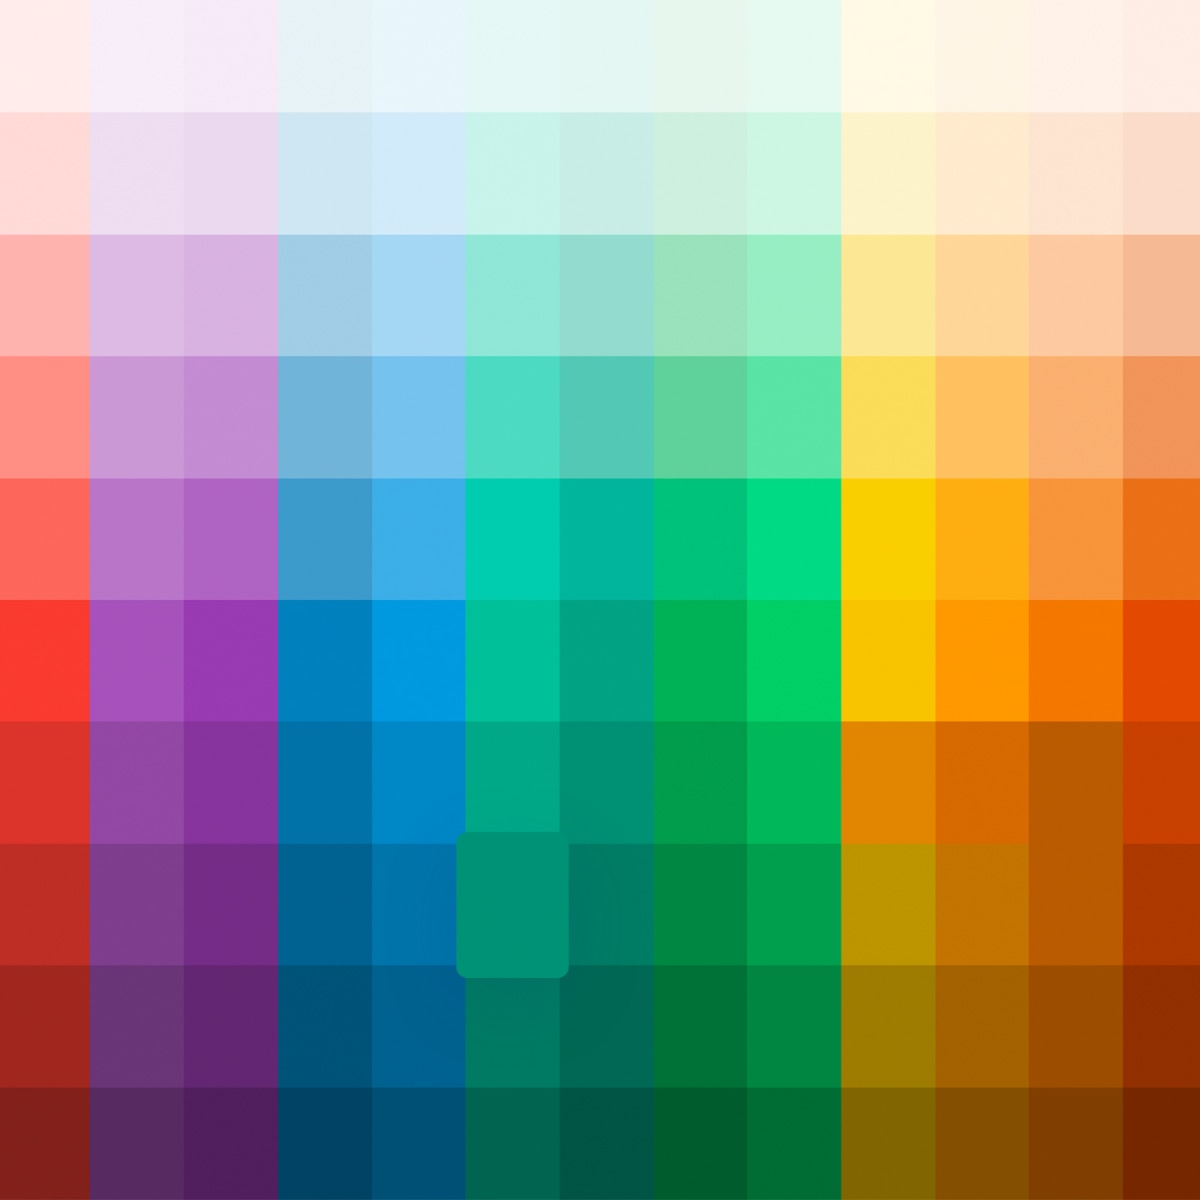 The 7 Best Online Color Palette Generators